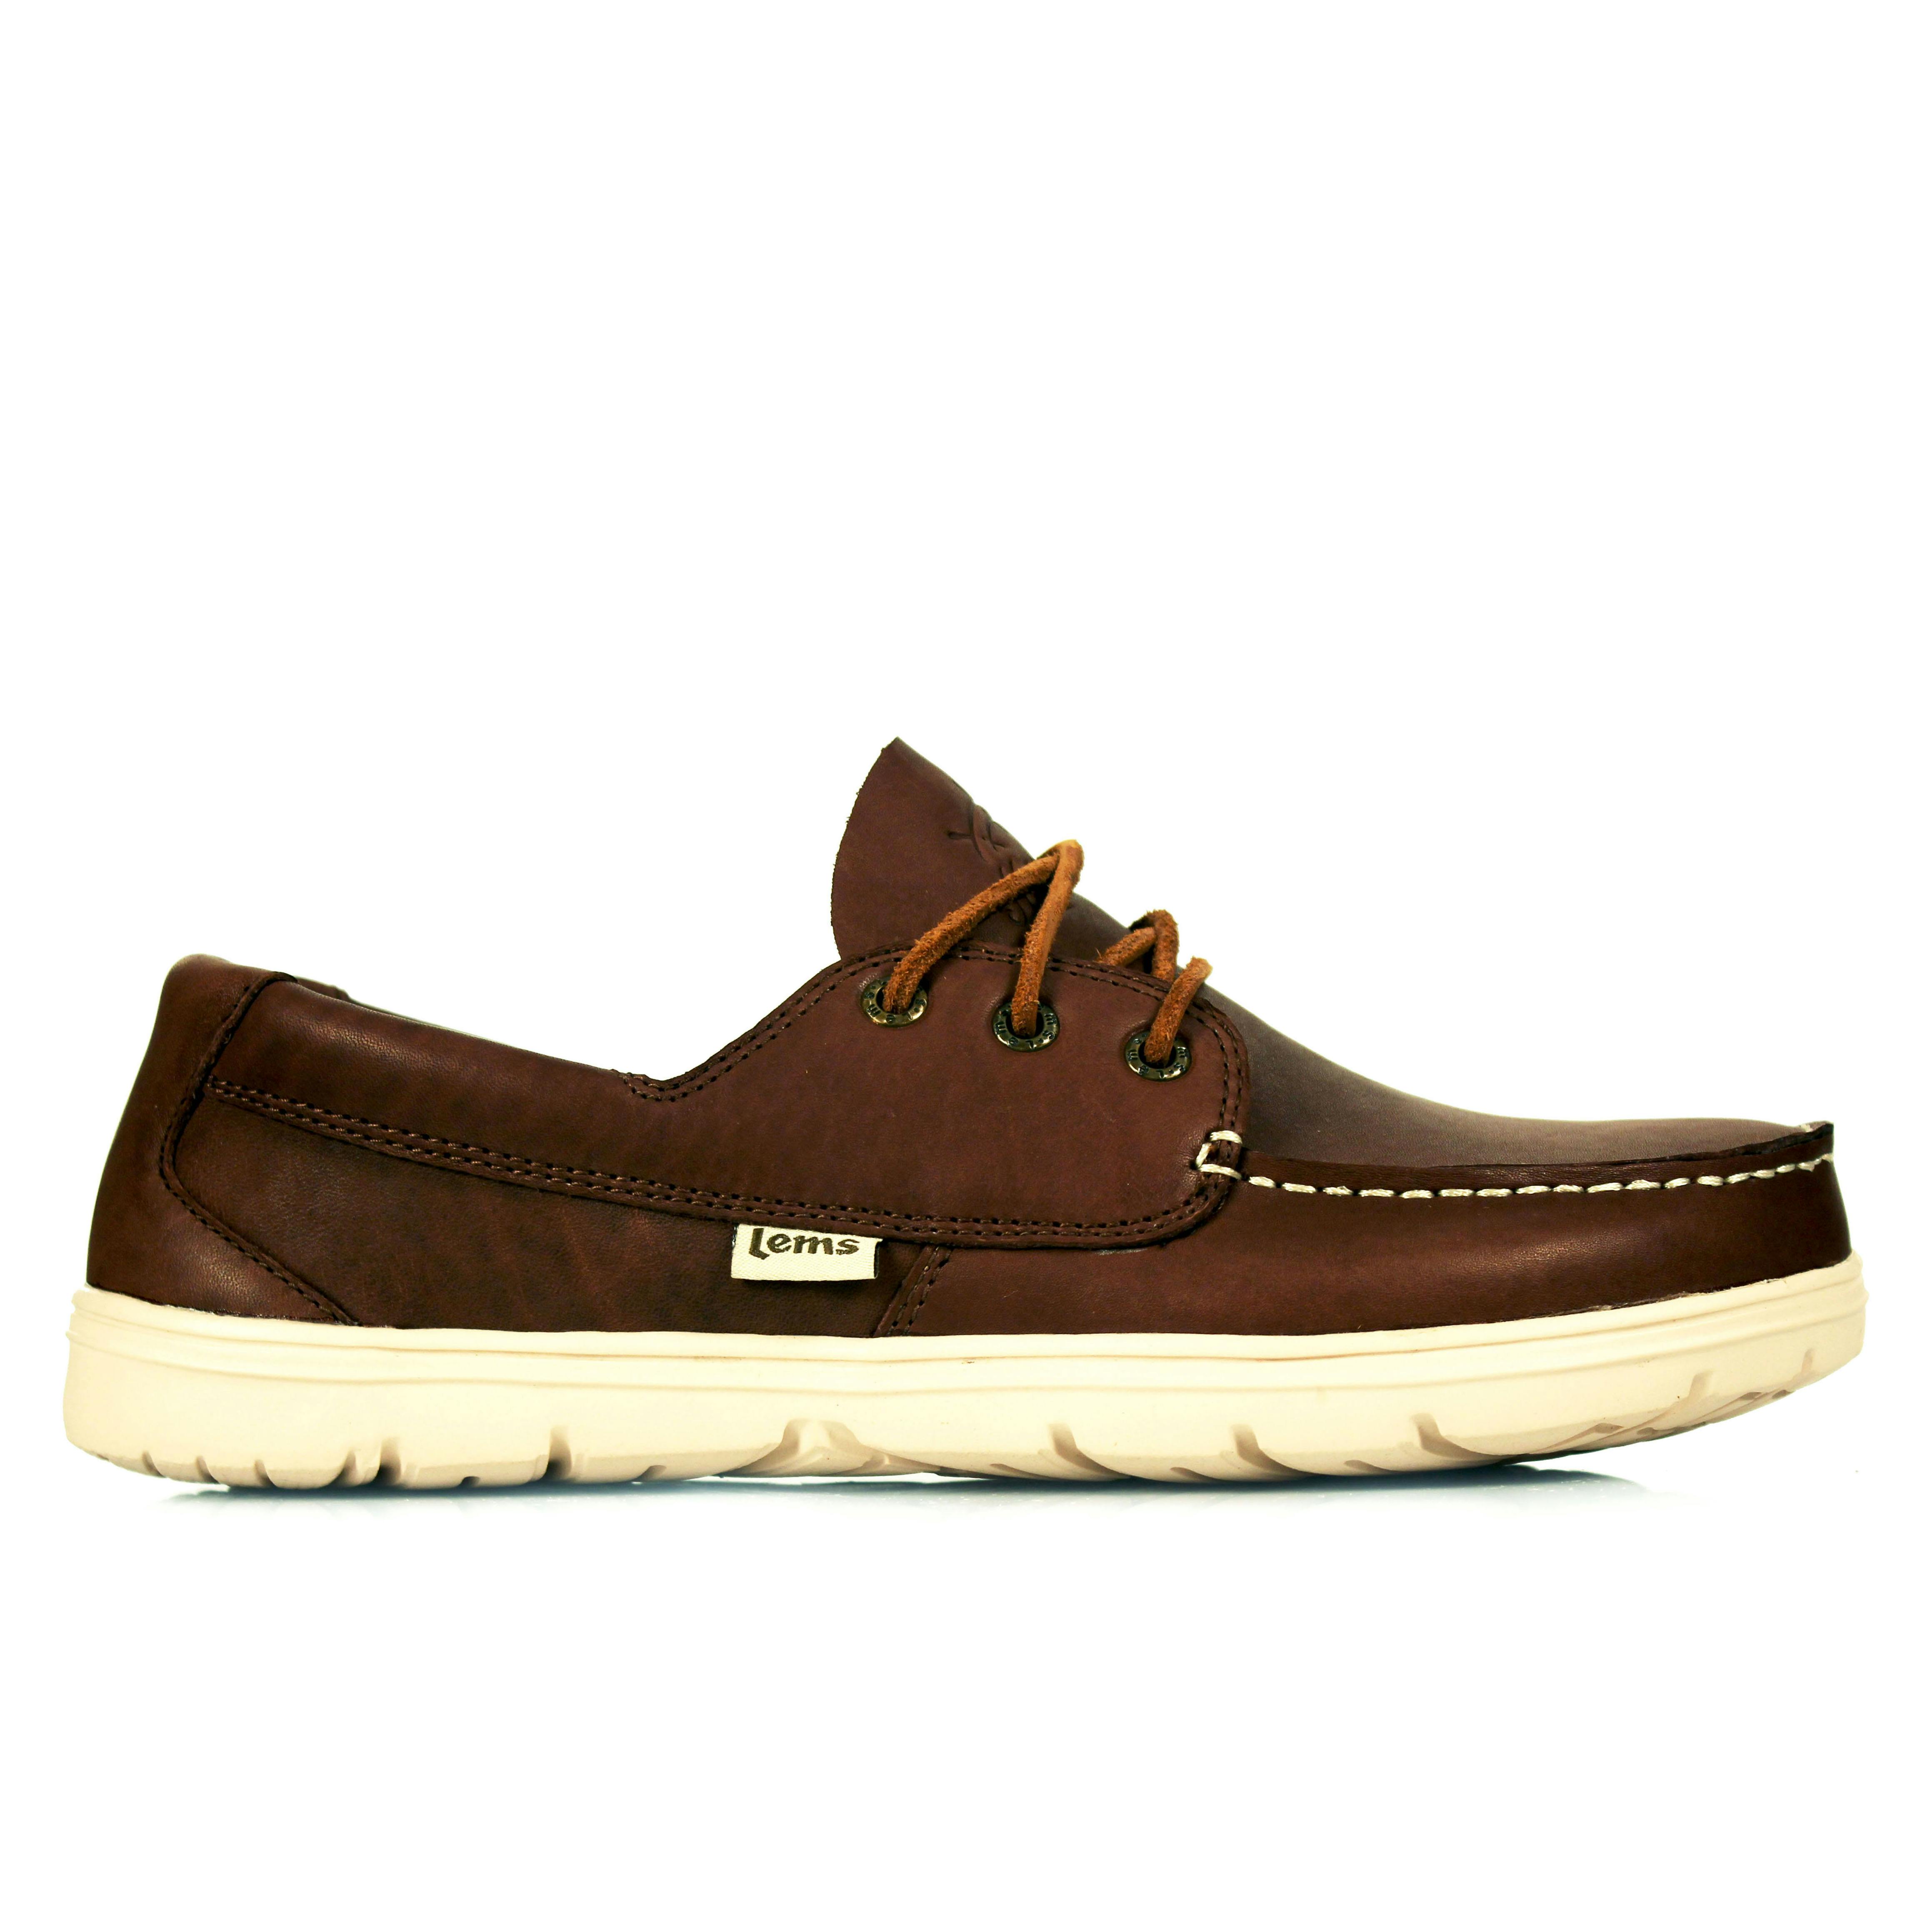 Lems Shoes Mariner Shoe - Walnut, undefined